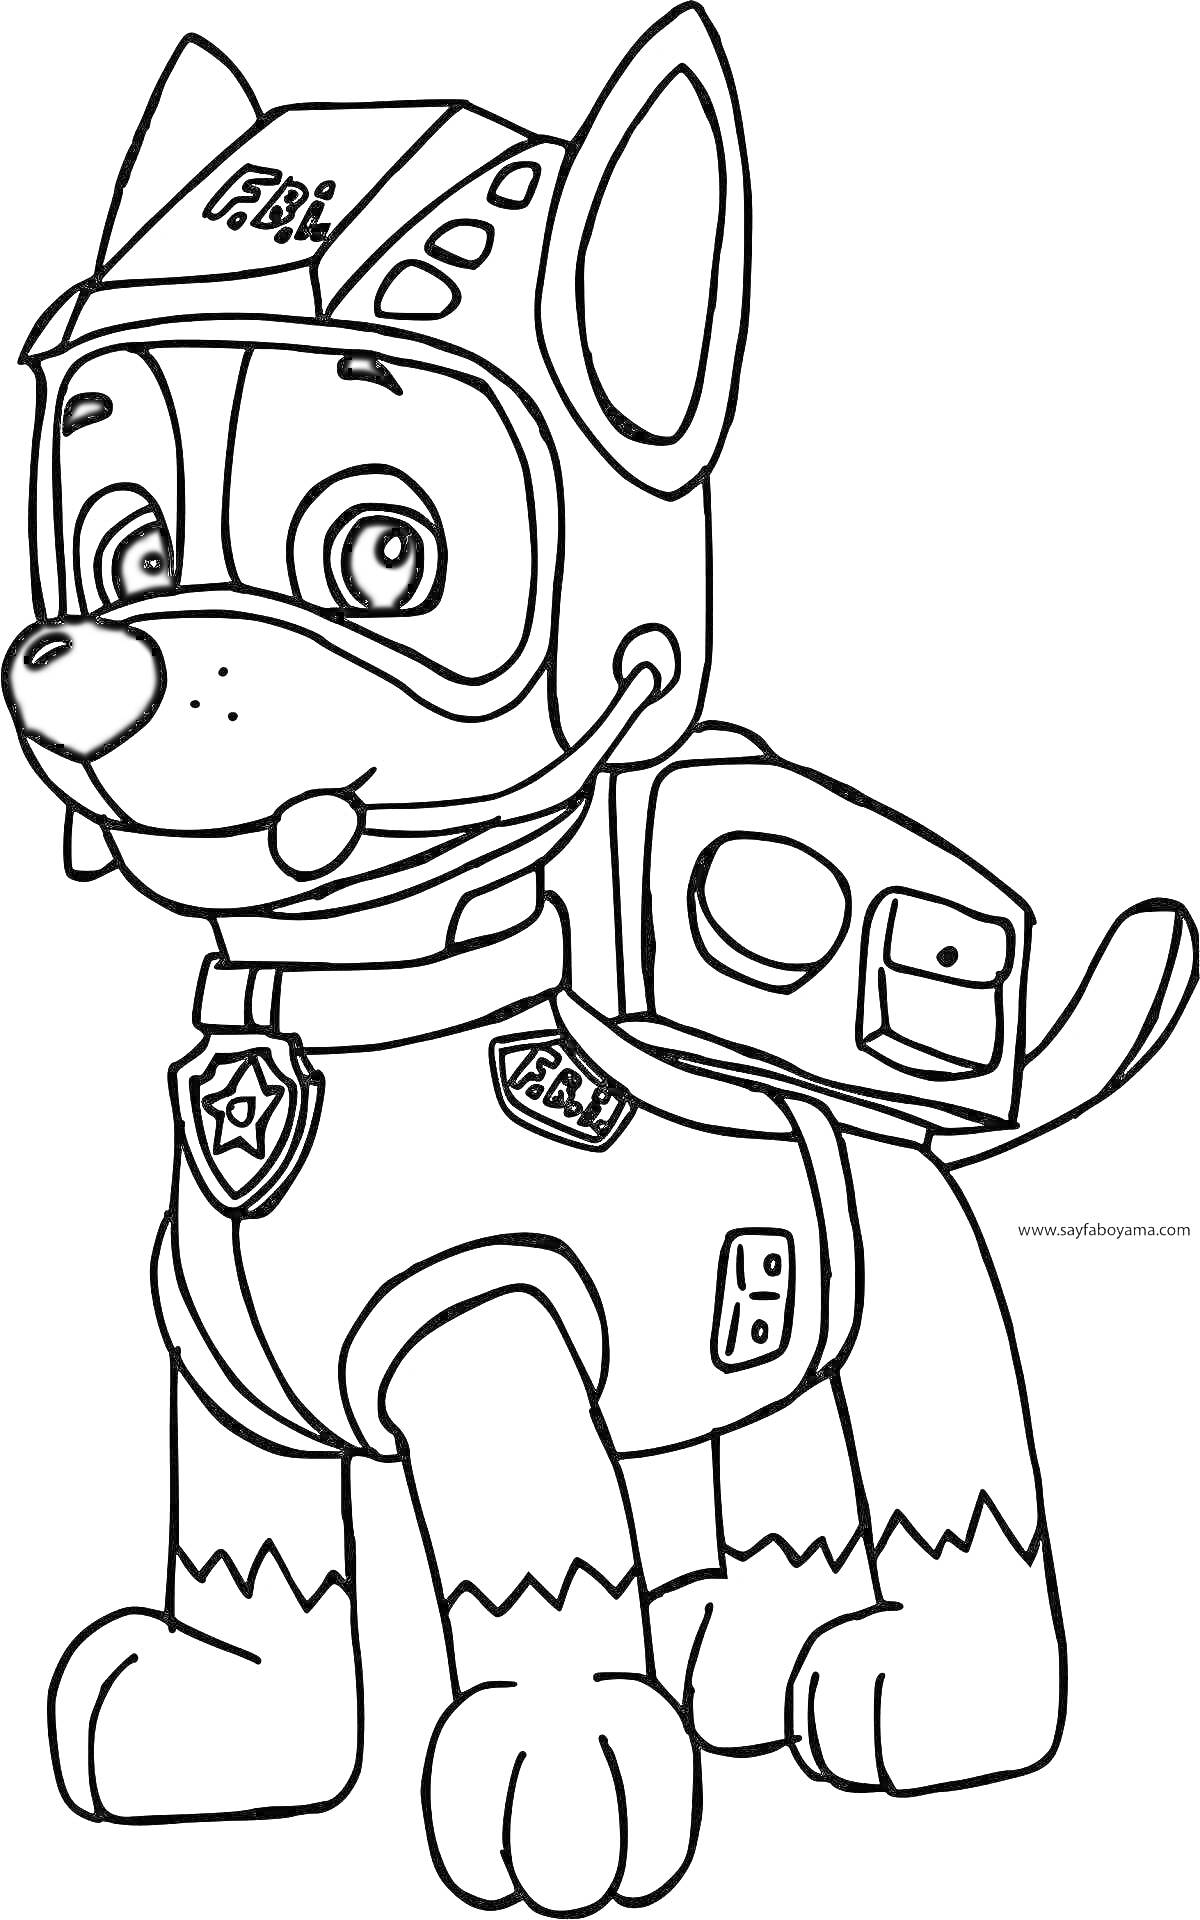 Раскраска Супергеройская собака в шлеме с микрофоном, рюкзаком и униформой с эмблемами.